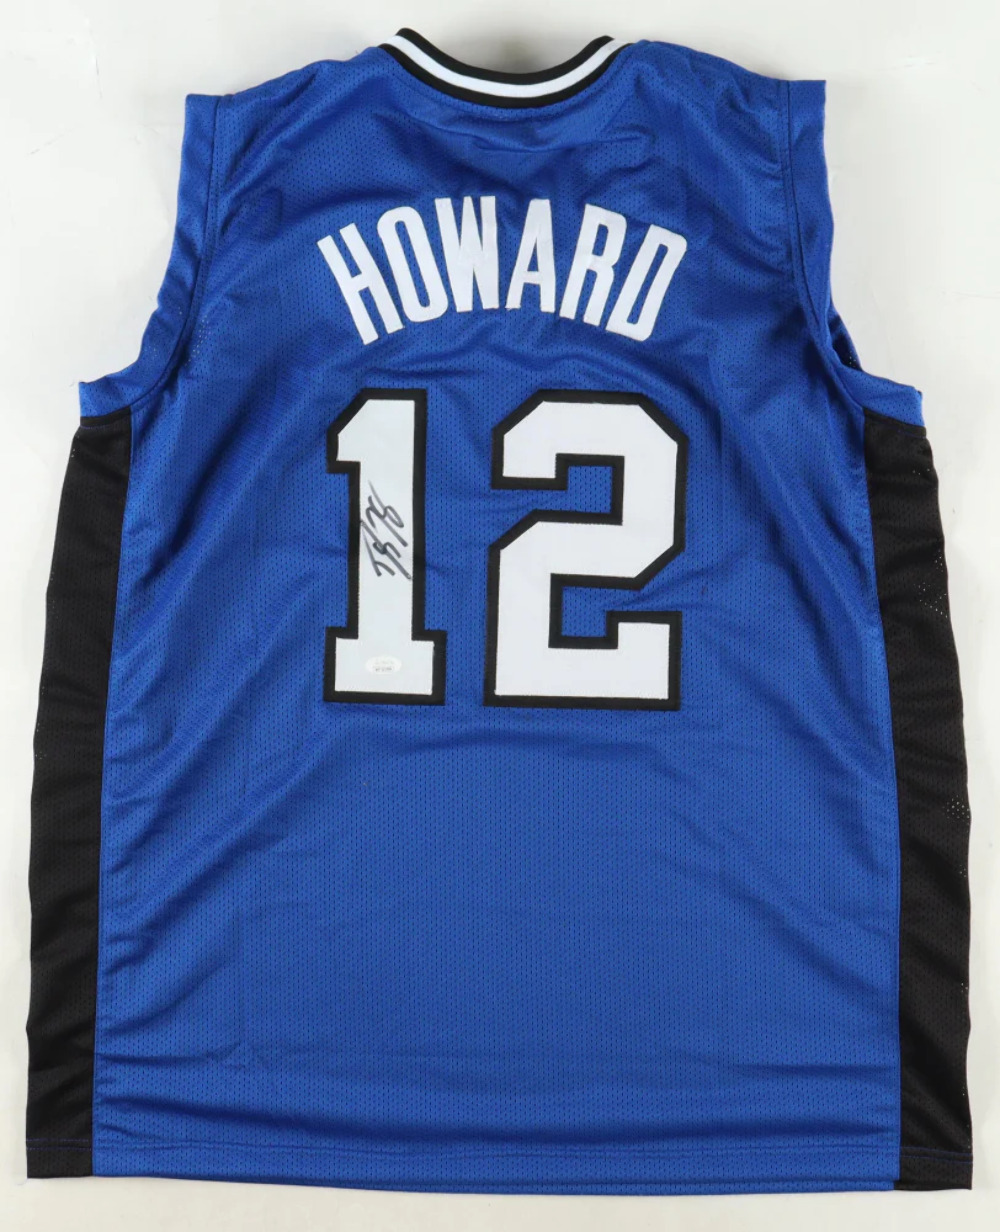 Dwight Howard Signed Jersey (JSA)